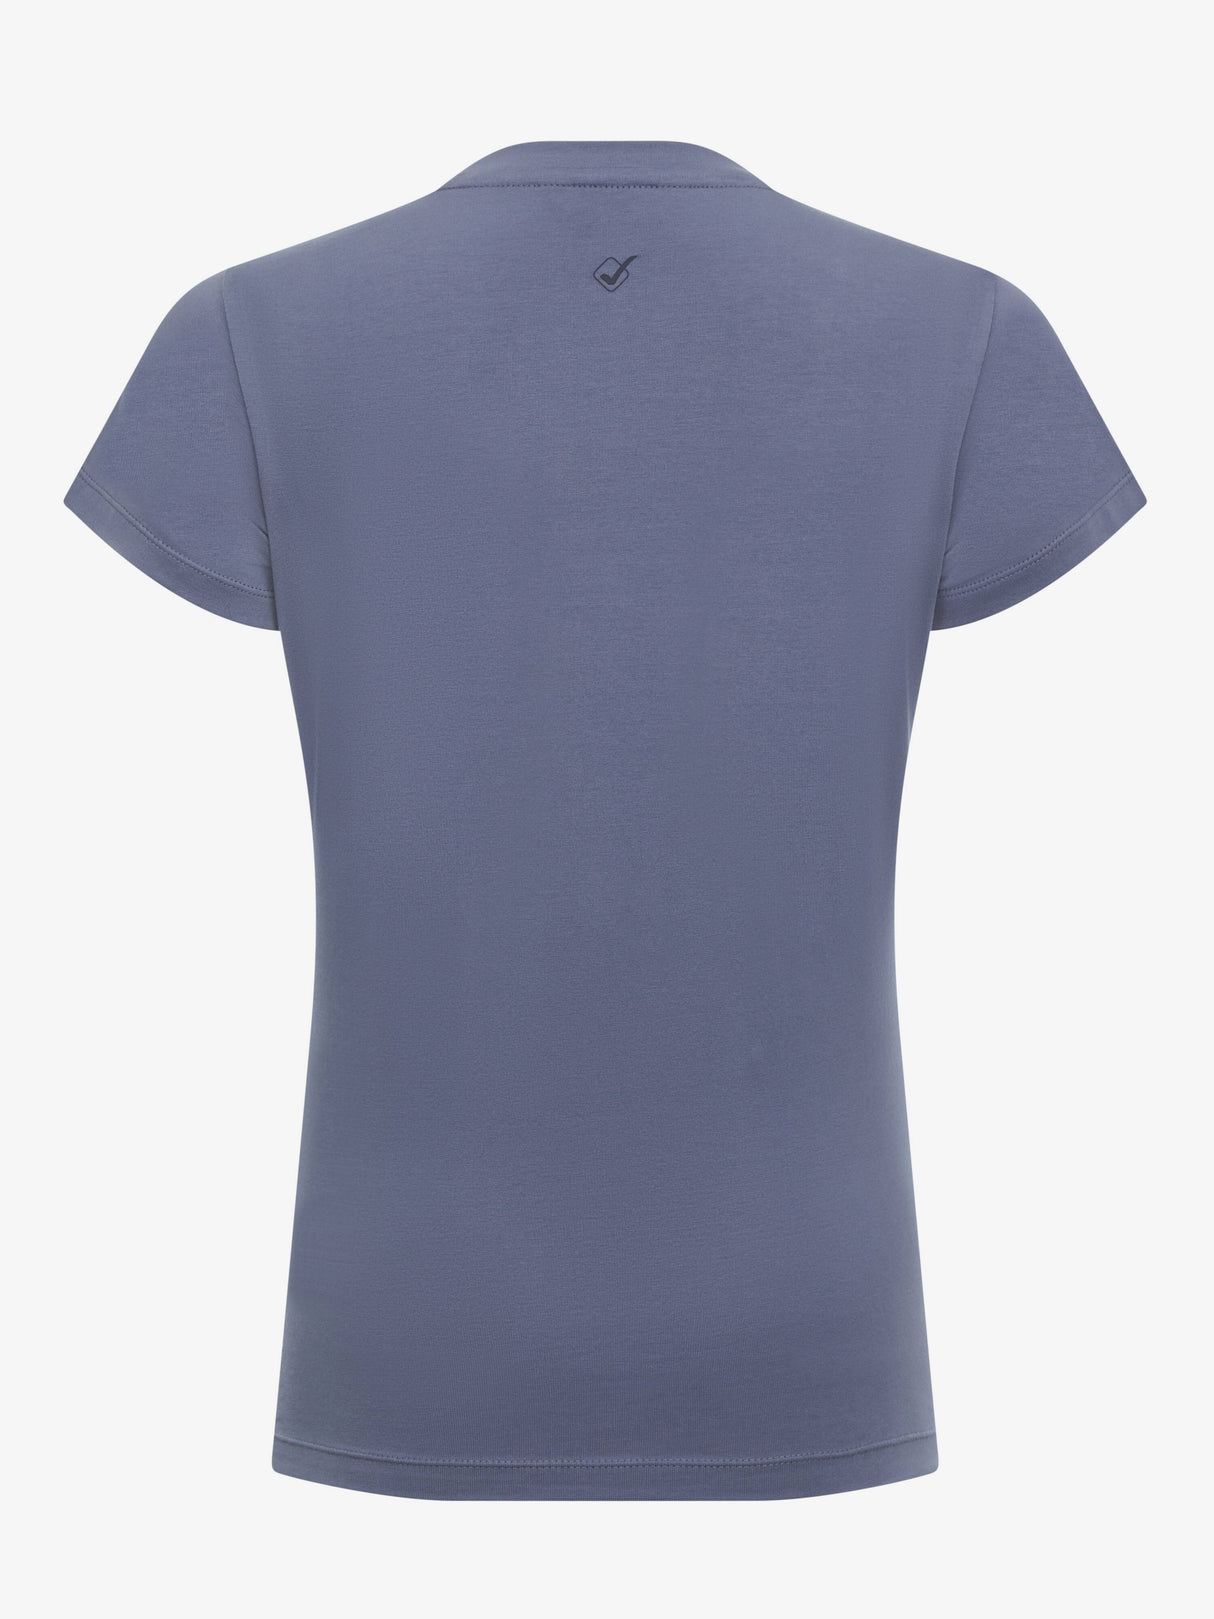 LeMieux Classique T-Shirt Jay Blue